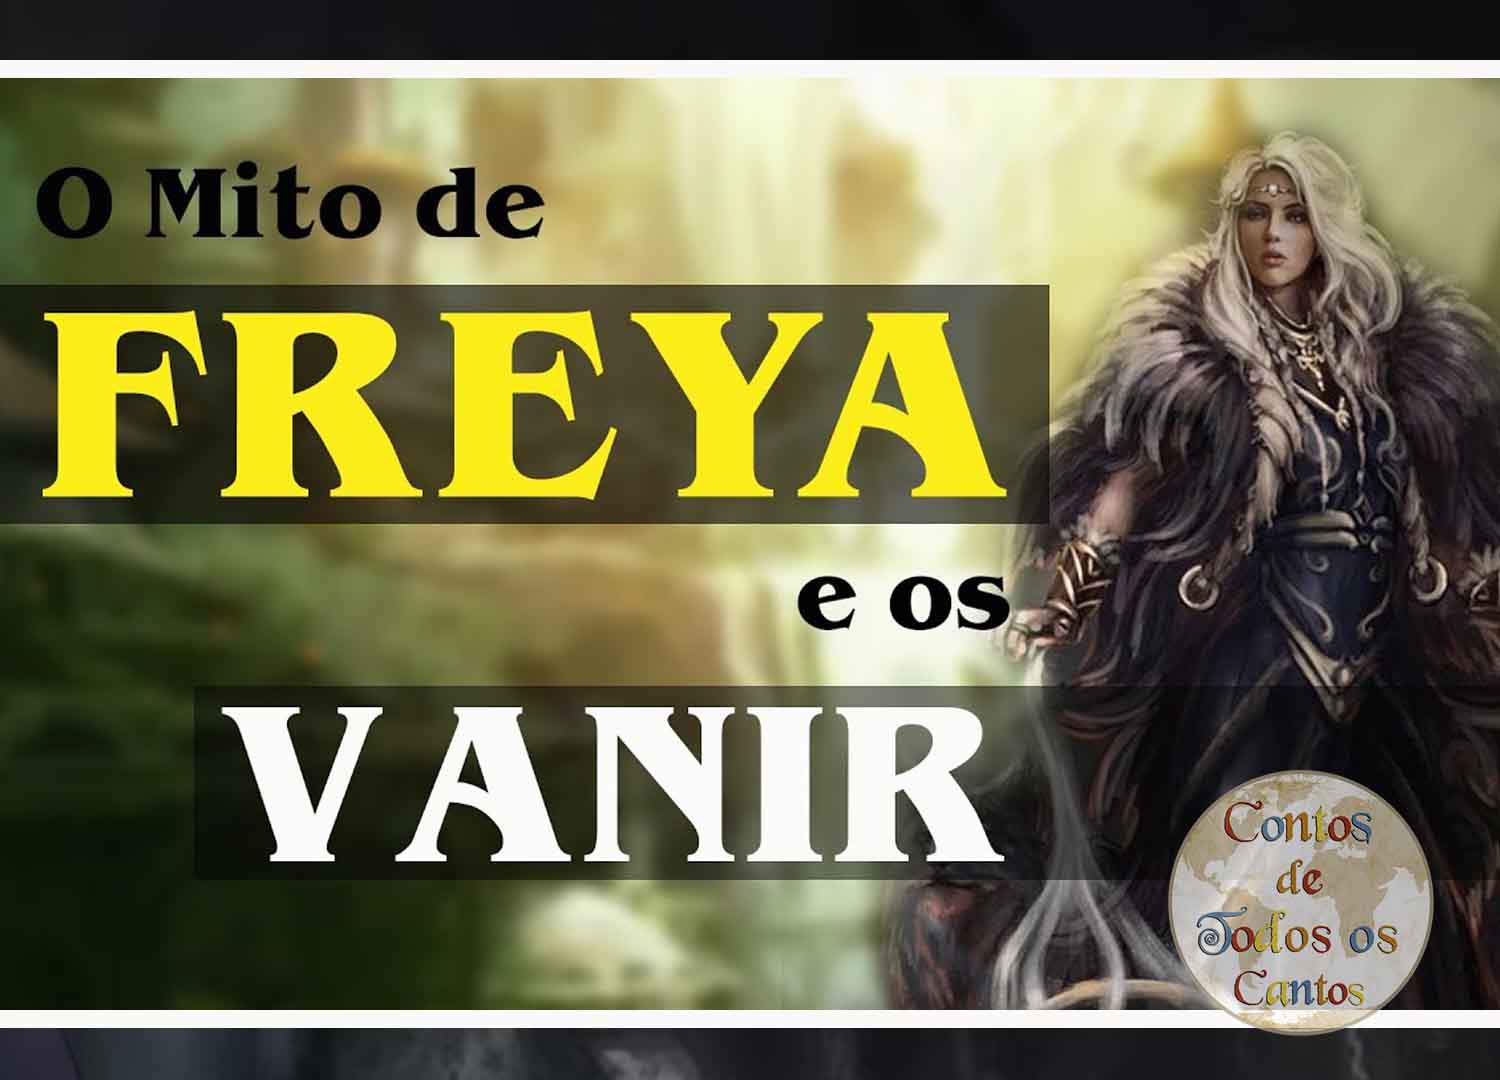 O Mito de Freya e os Vanir